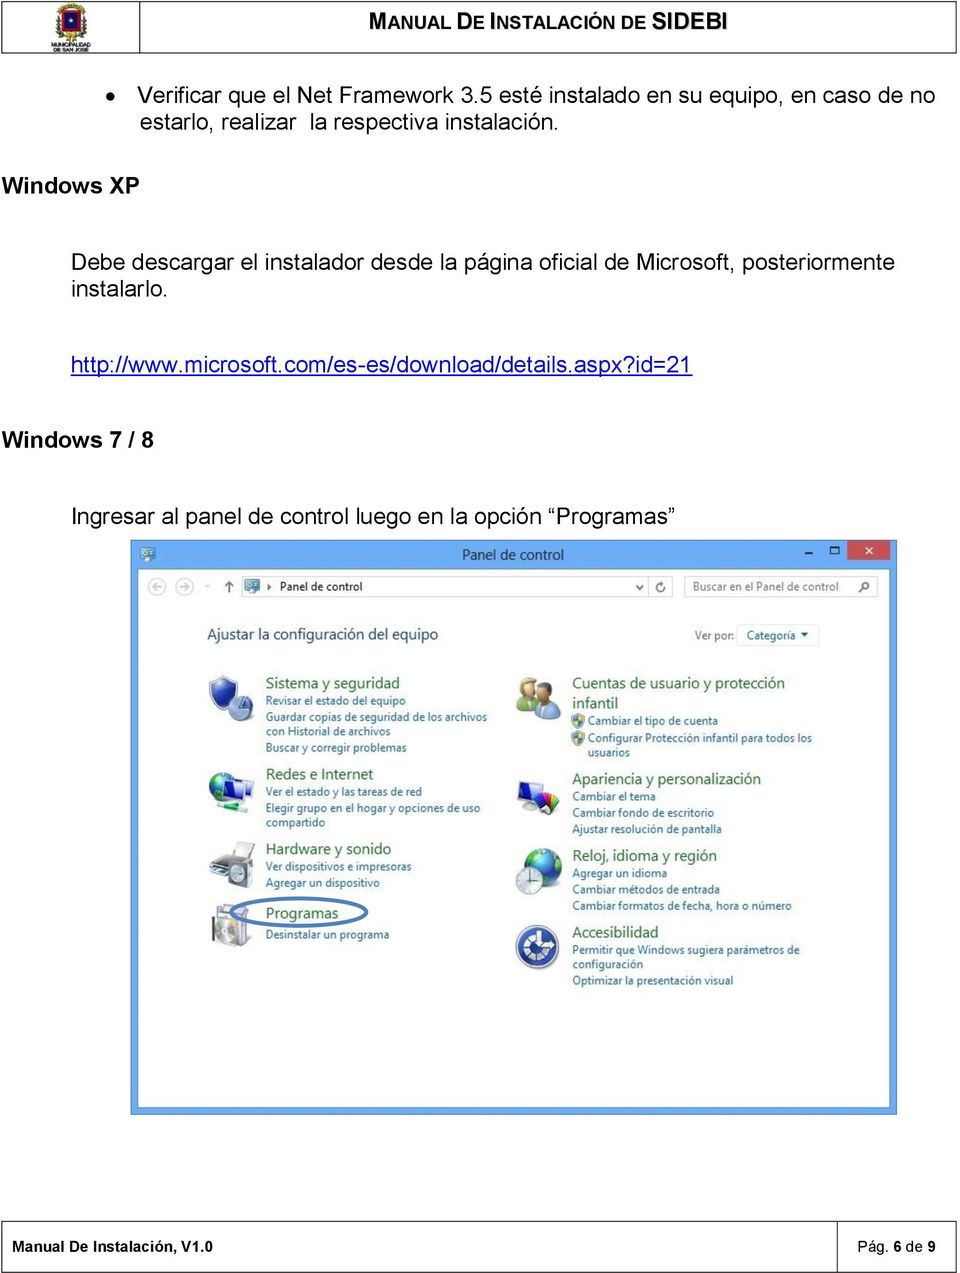 Windows XP Debe descargar el instalador desde la página oficial de Microsoft, posteriormente